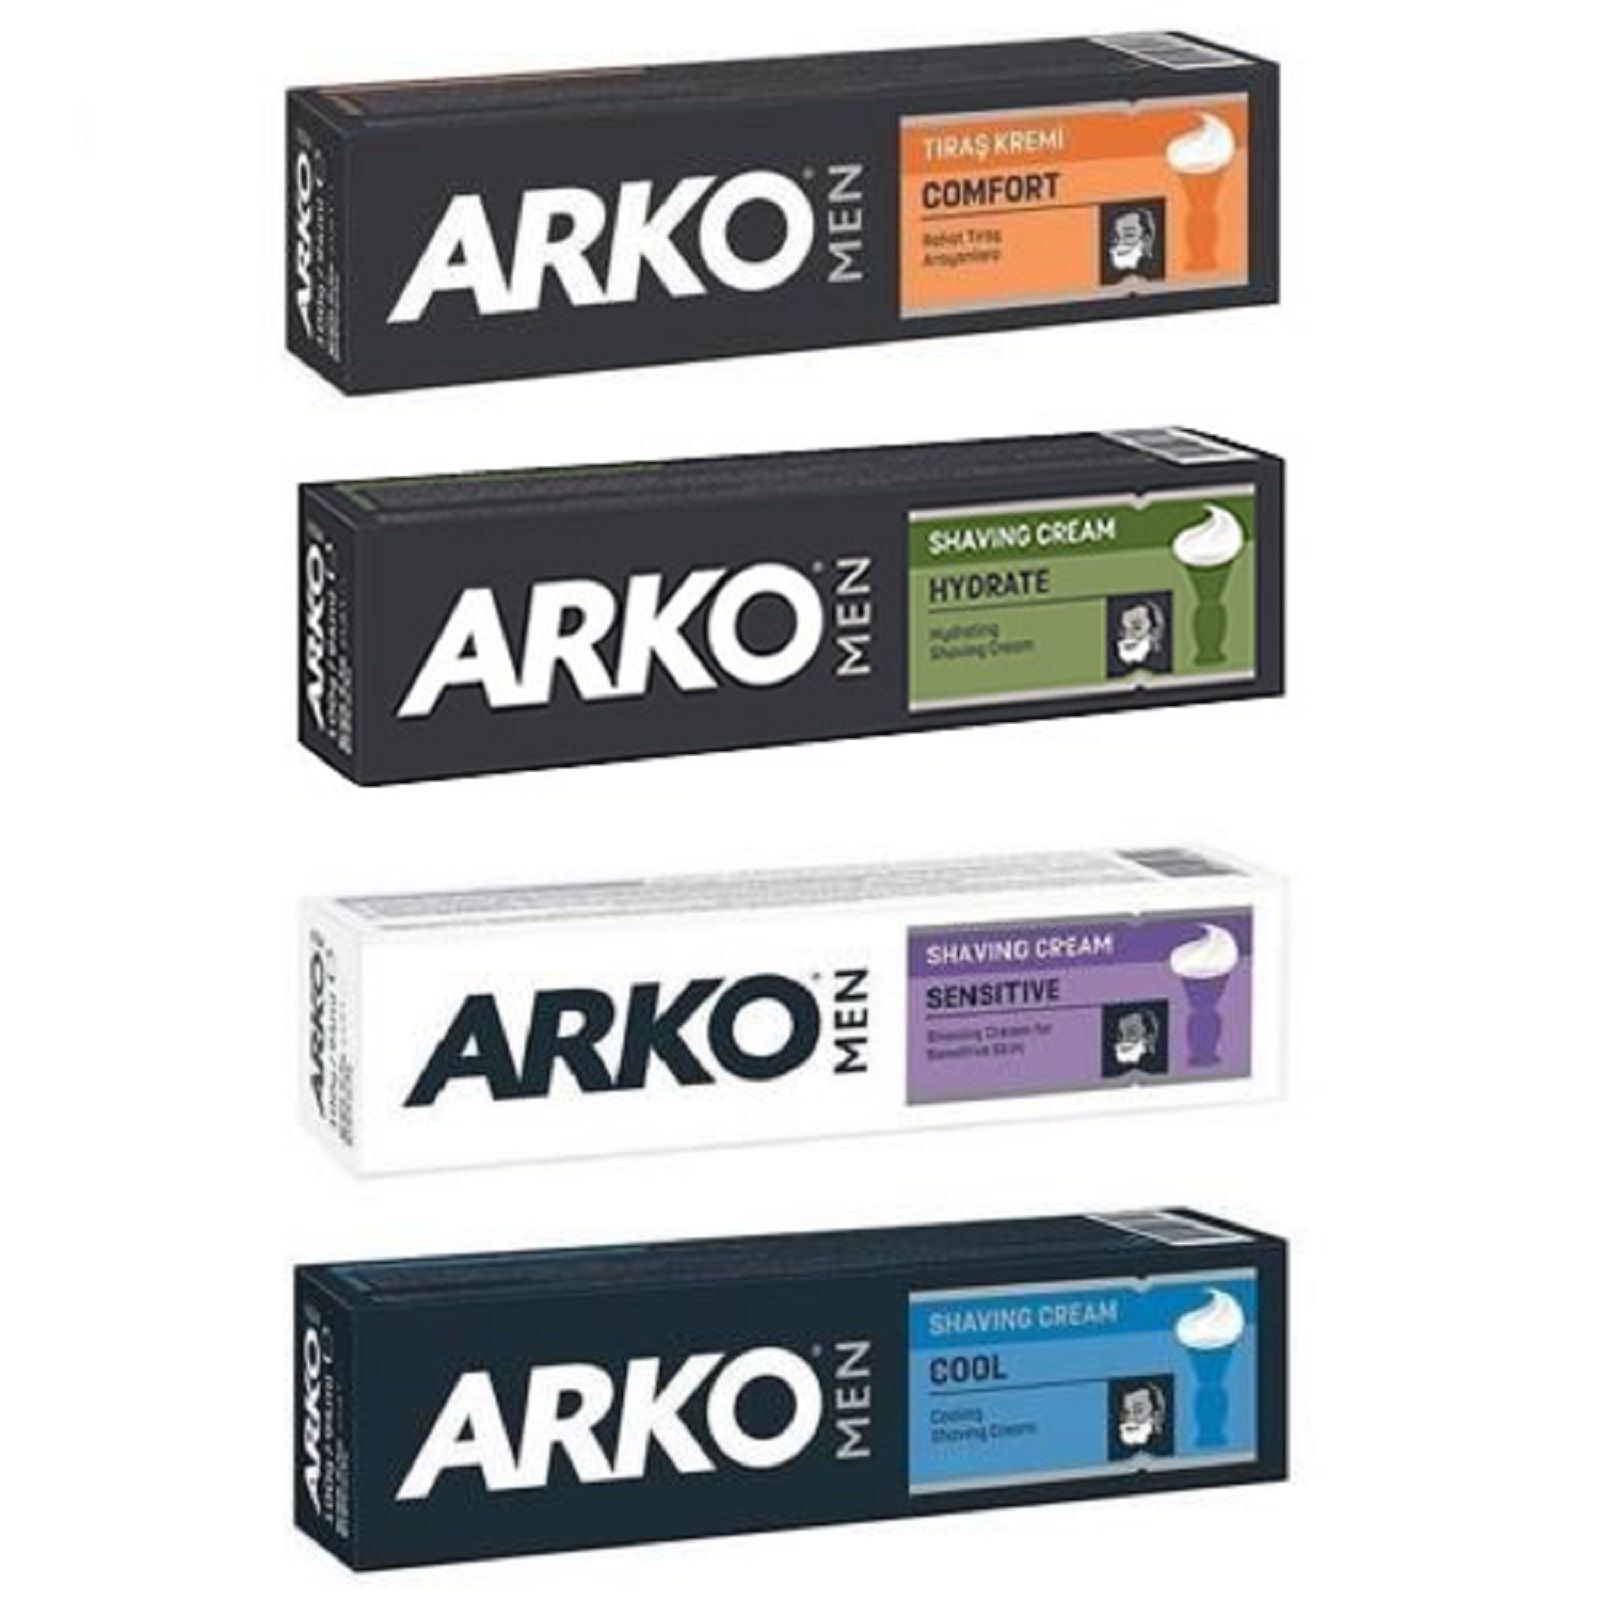 Arko Online